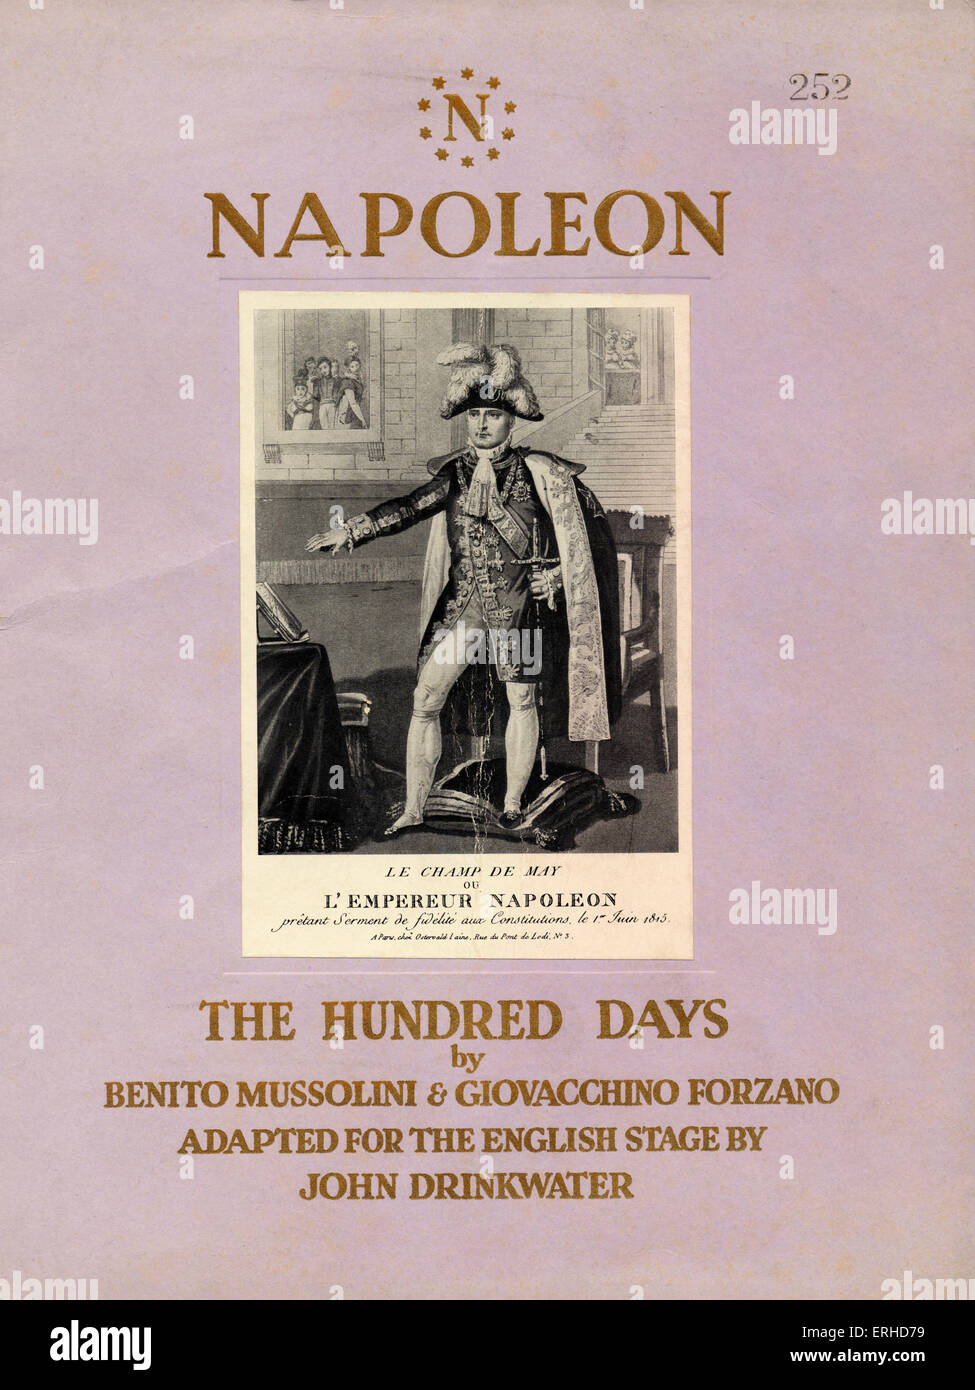 Napoleon - die hundert-Tage - Spiel von Benito Mussolini & Giovacchino Forzano, angepasst für die englische Bühne von John Drinkwater. Stockfoto